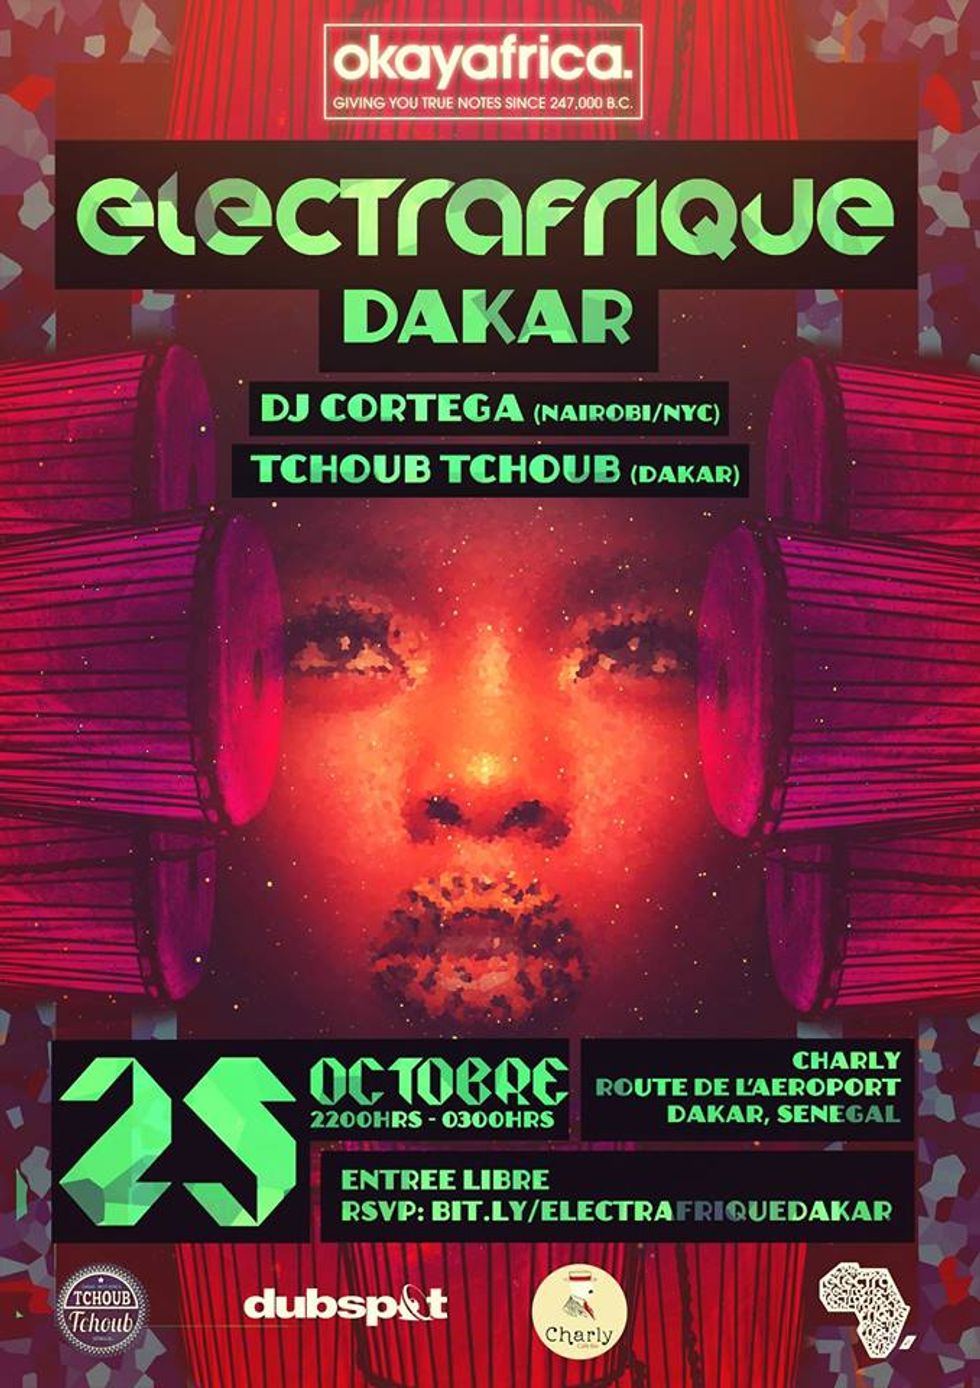 Okayafrica Electrafrique Dakar With DJ Cortega & Tchoub Tchoub (Oct. 25th)